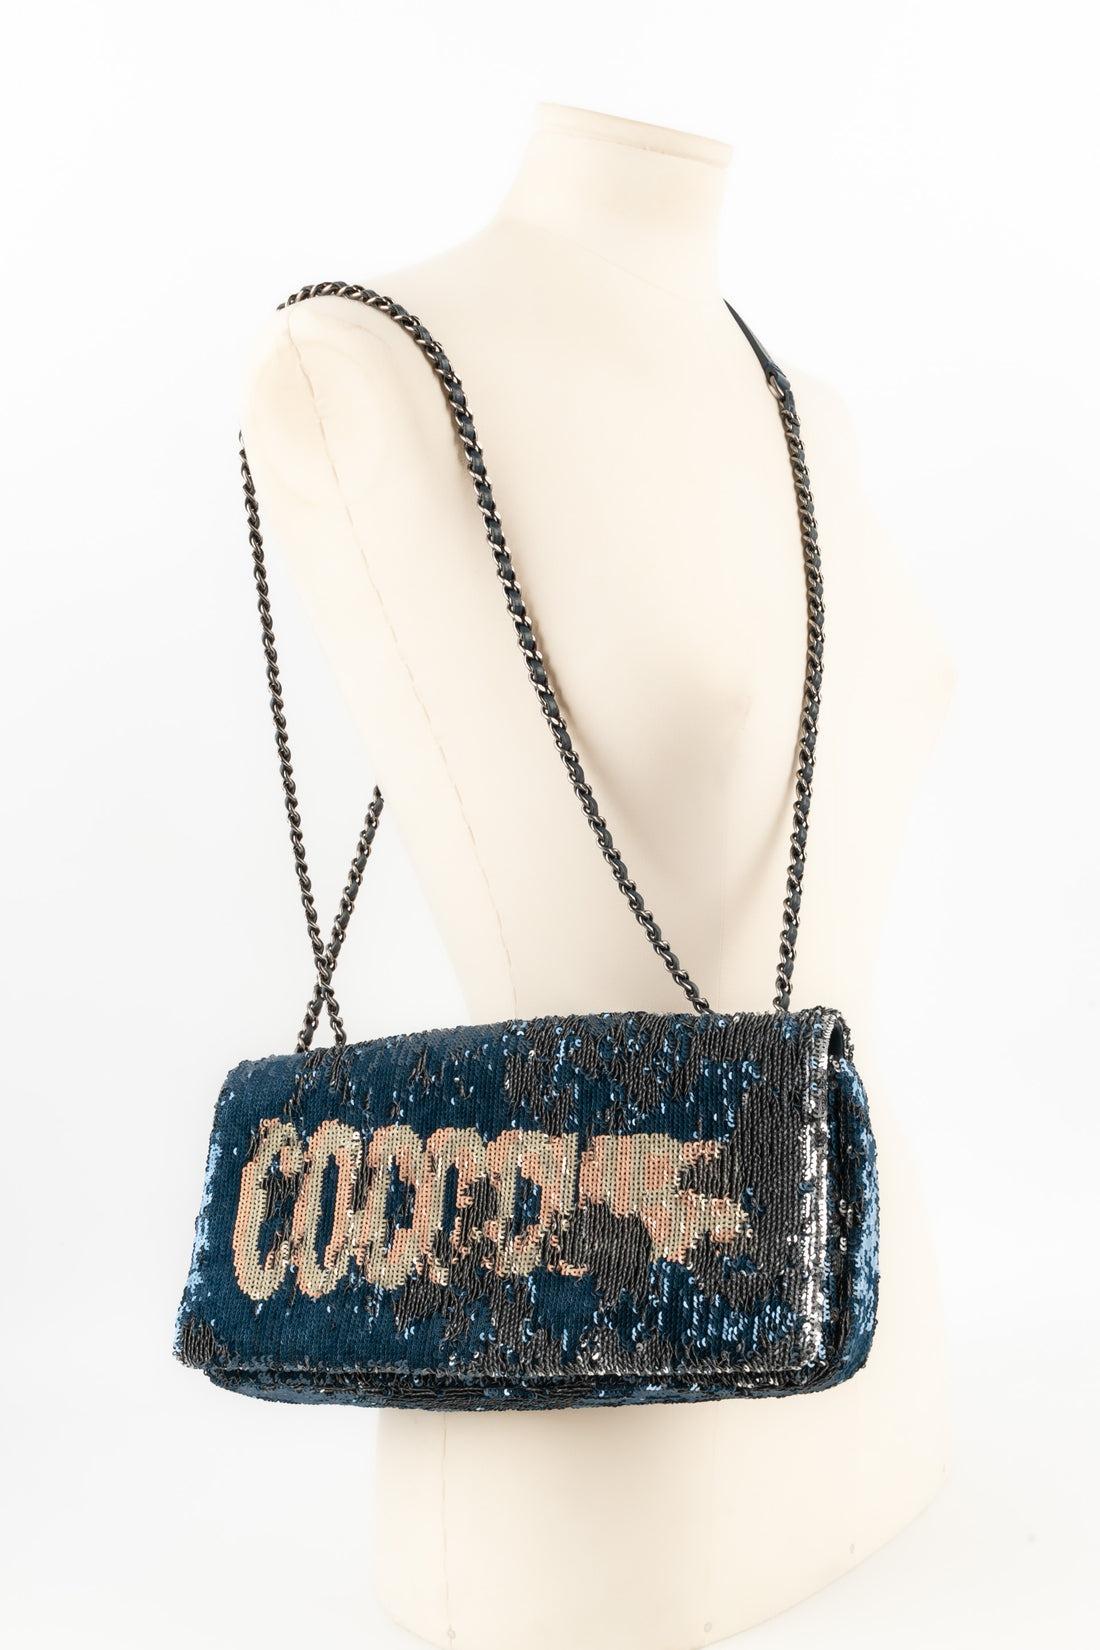 Chanel Blue Leather Sequinned Bag Paris-Cuba, 2018 In Excellent Condition For Sale In SAINT-OUEN-SUR-SEINE, FR